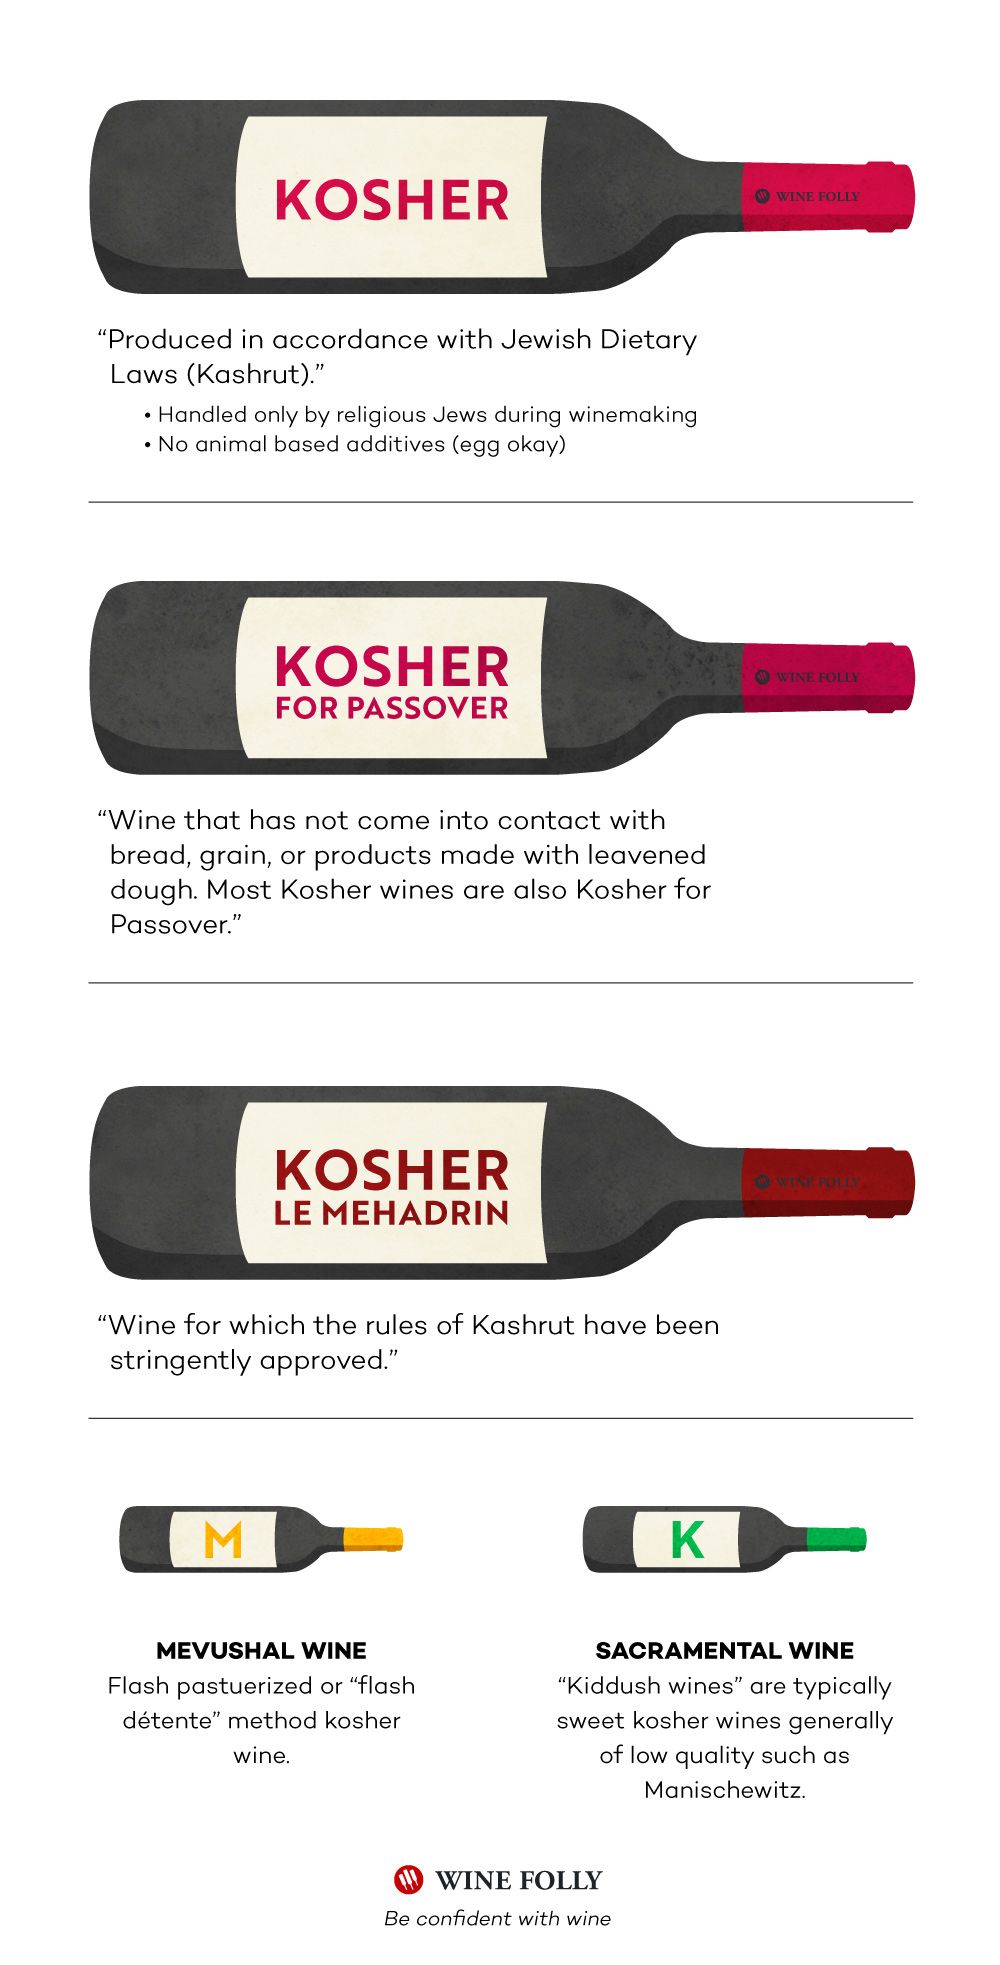 Košerinių vynų rūšys ir ką jie reiškia. Infografiją sukūrė WIne Folly